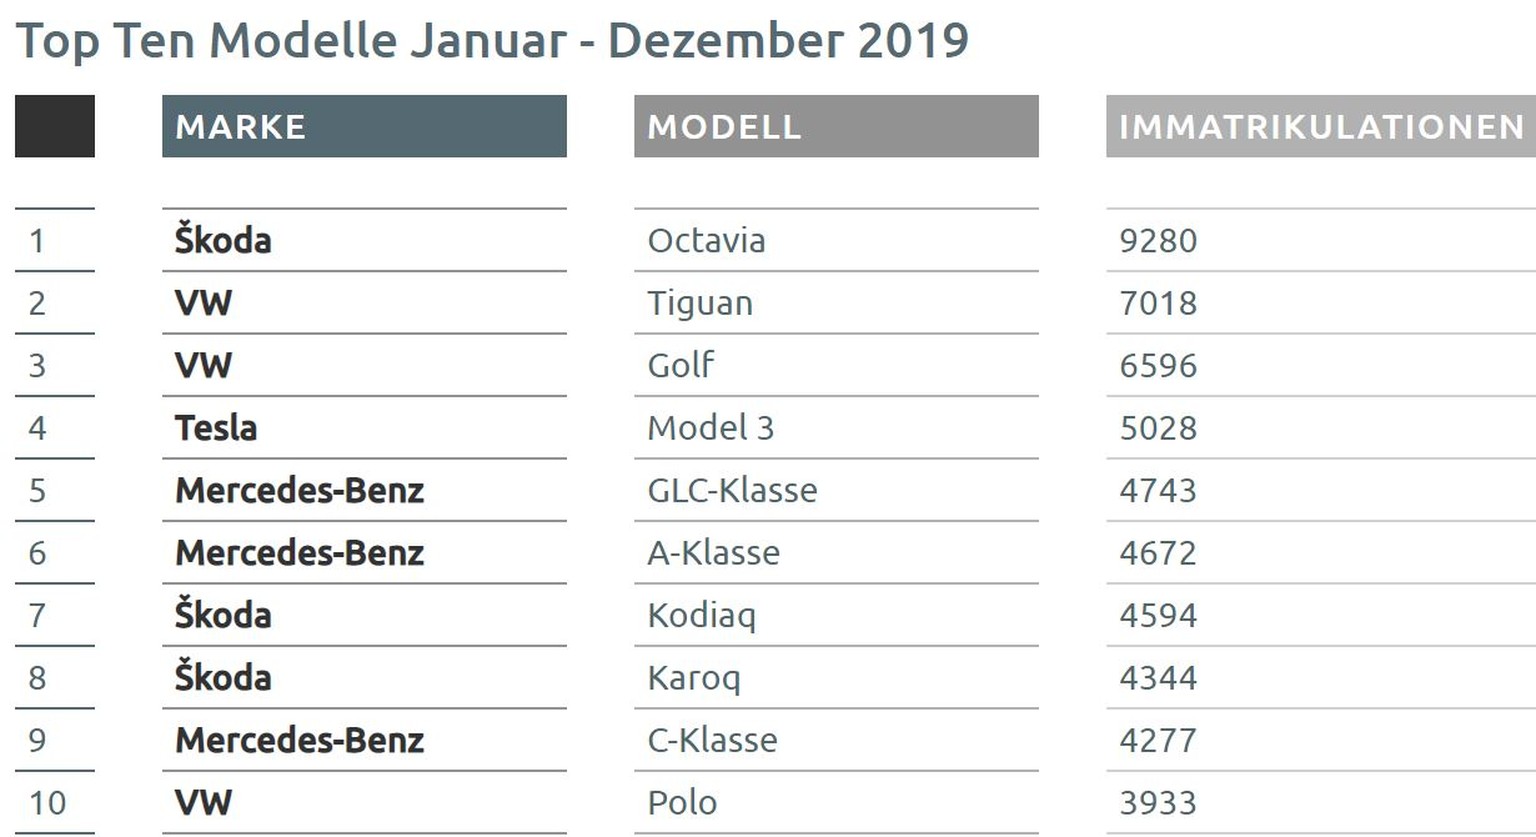 VW ist zusammen mit seiner Tochter Skoda gleich sechs Mal in den Top 10 vertreten.